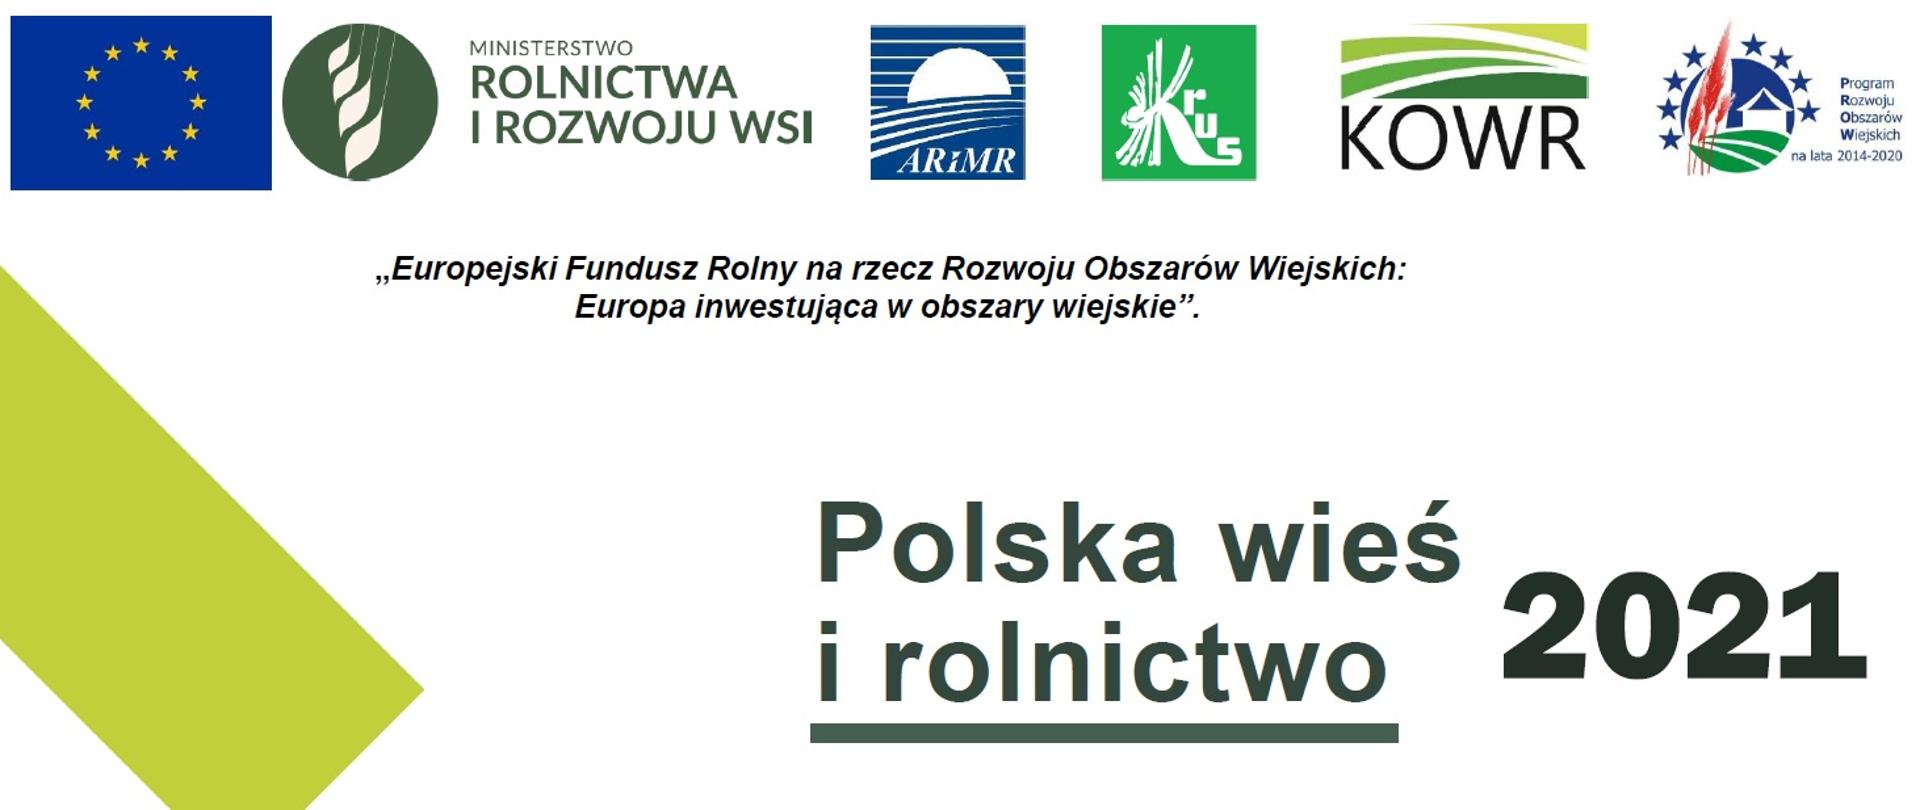 Polska wieś i rolnictwo 2021 - raport